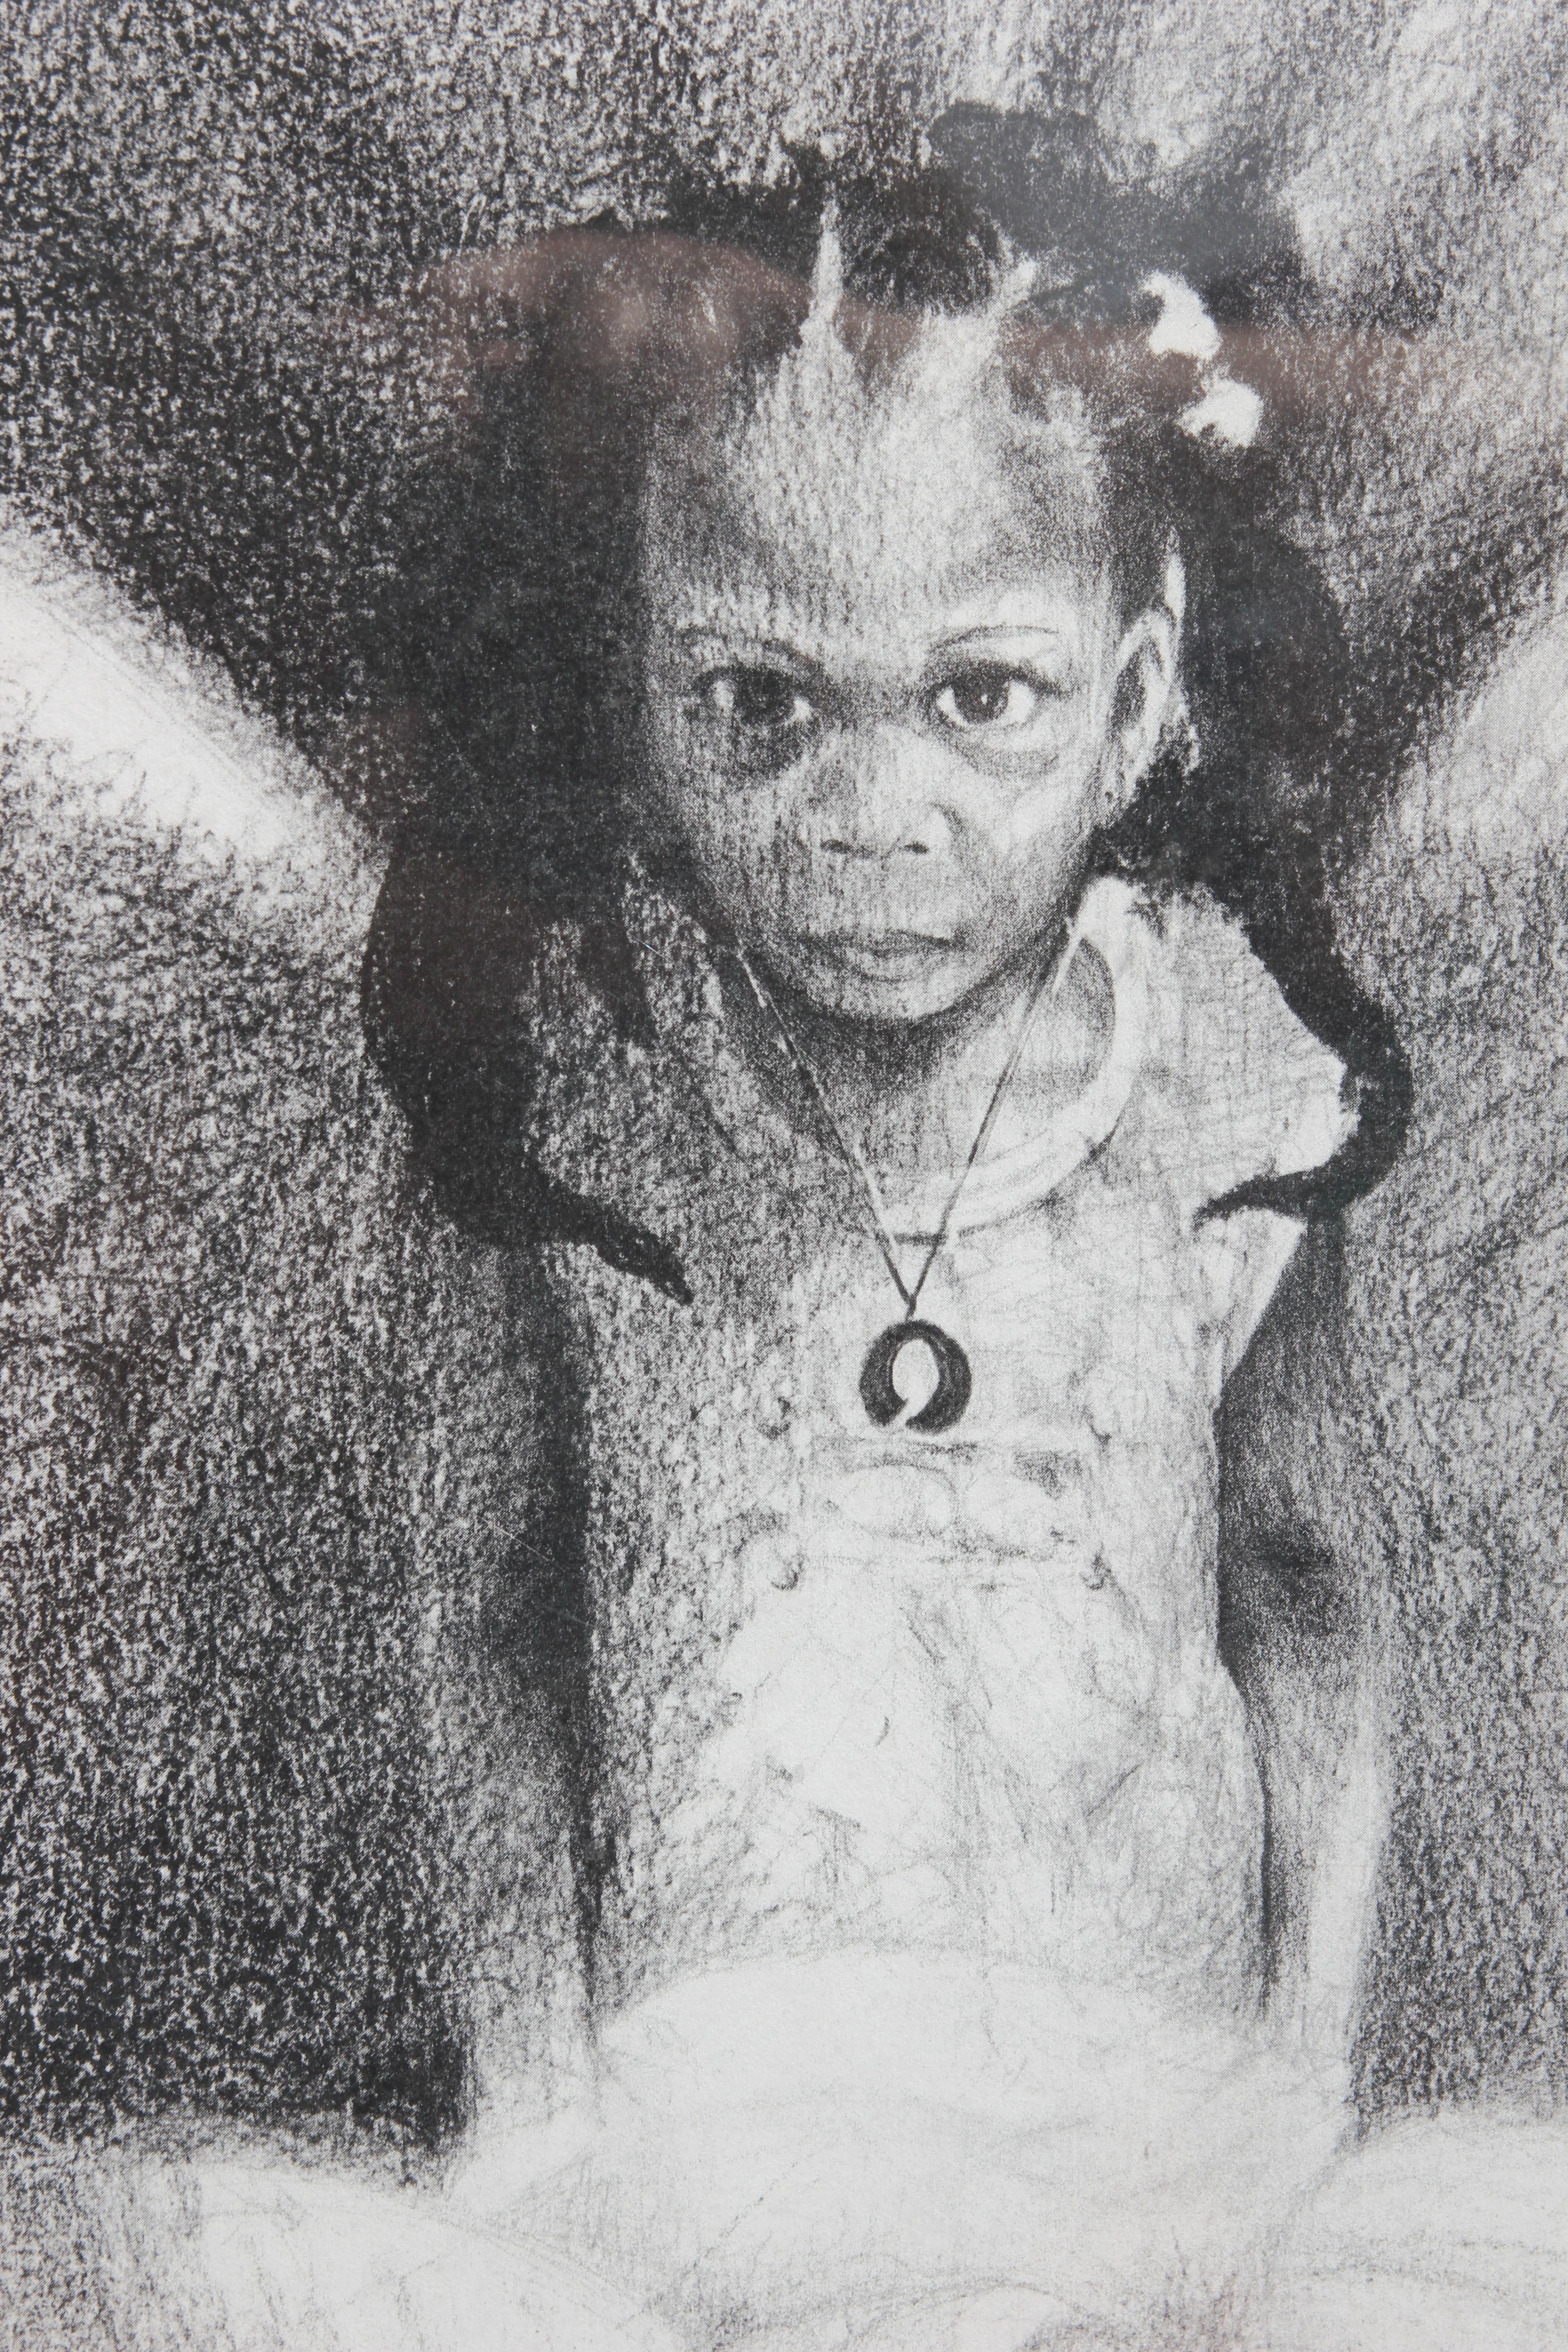 Épreuve d'artiste de l'artiste Charles Criner de Houston, Texas. Son travail parle en chiffres de la communauté afro-américaine et de l'histoire de l'oppression et de l'esclavage. L'œuvre est intitulée 